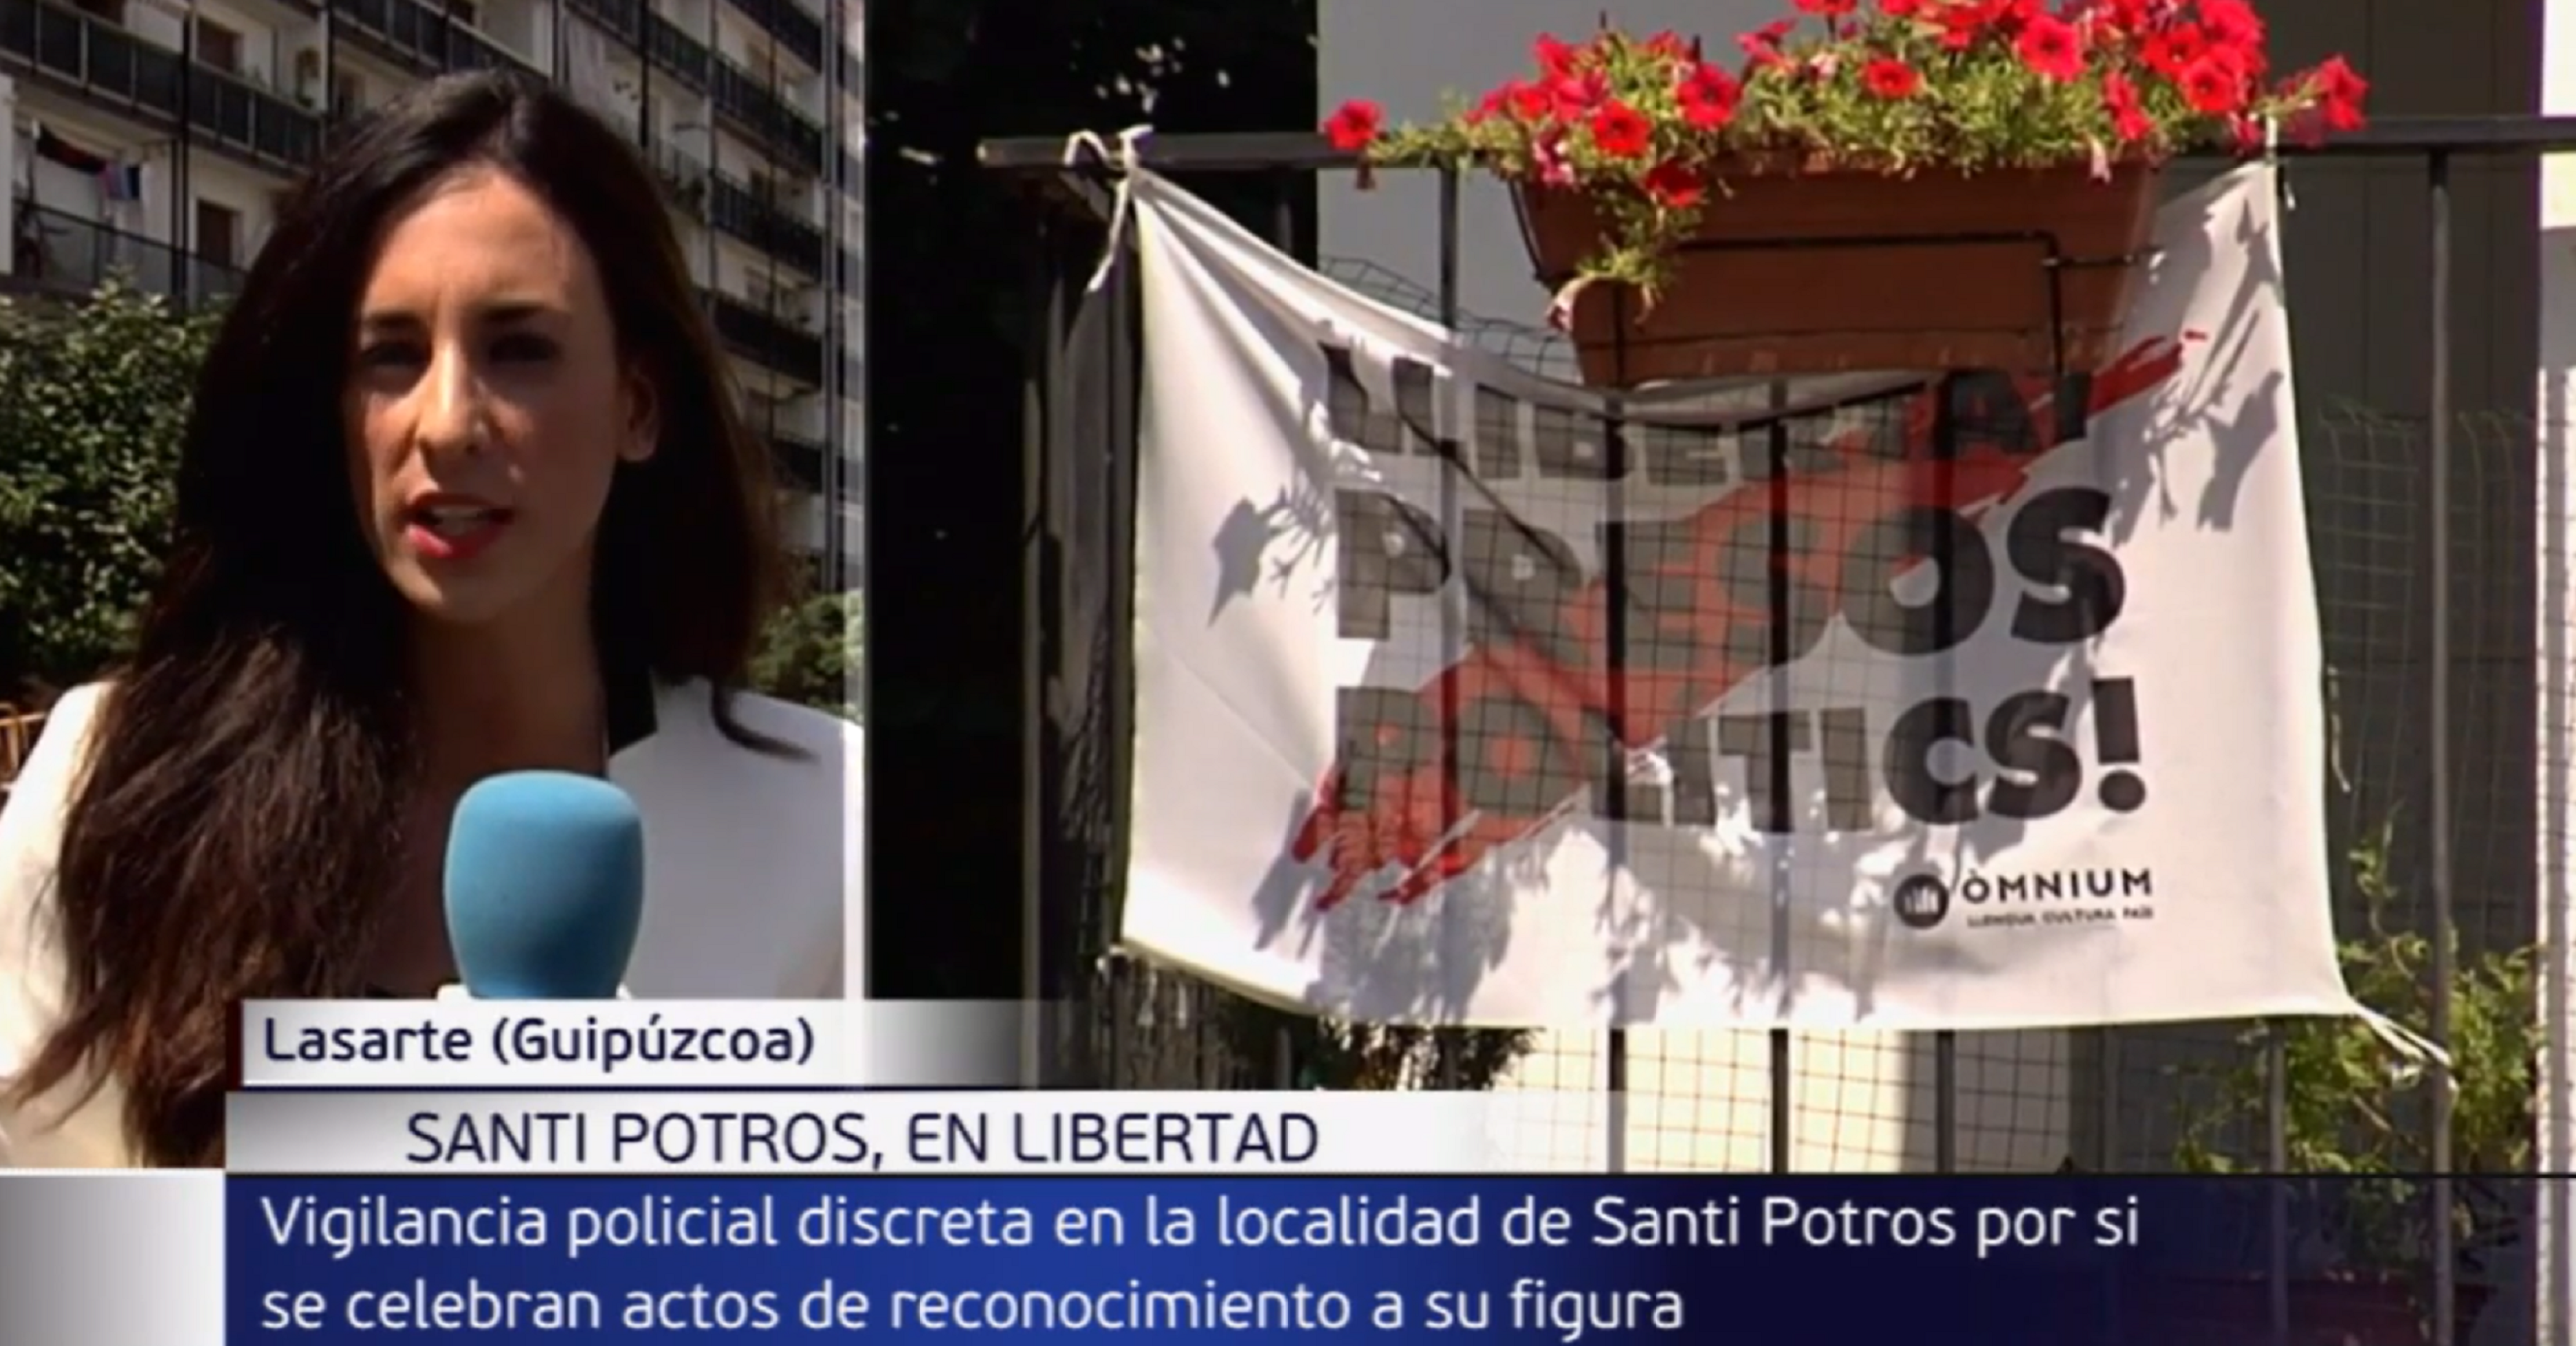 Telecinco manipula sense vergonya: parla d'un etarra mostrant un cartell pels presos